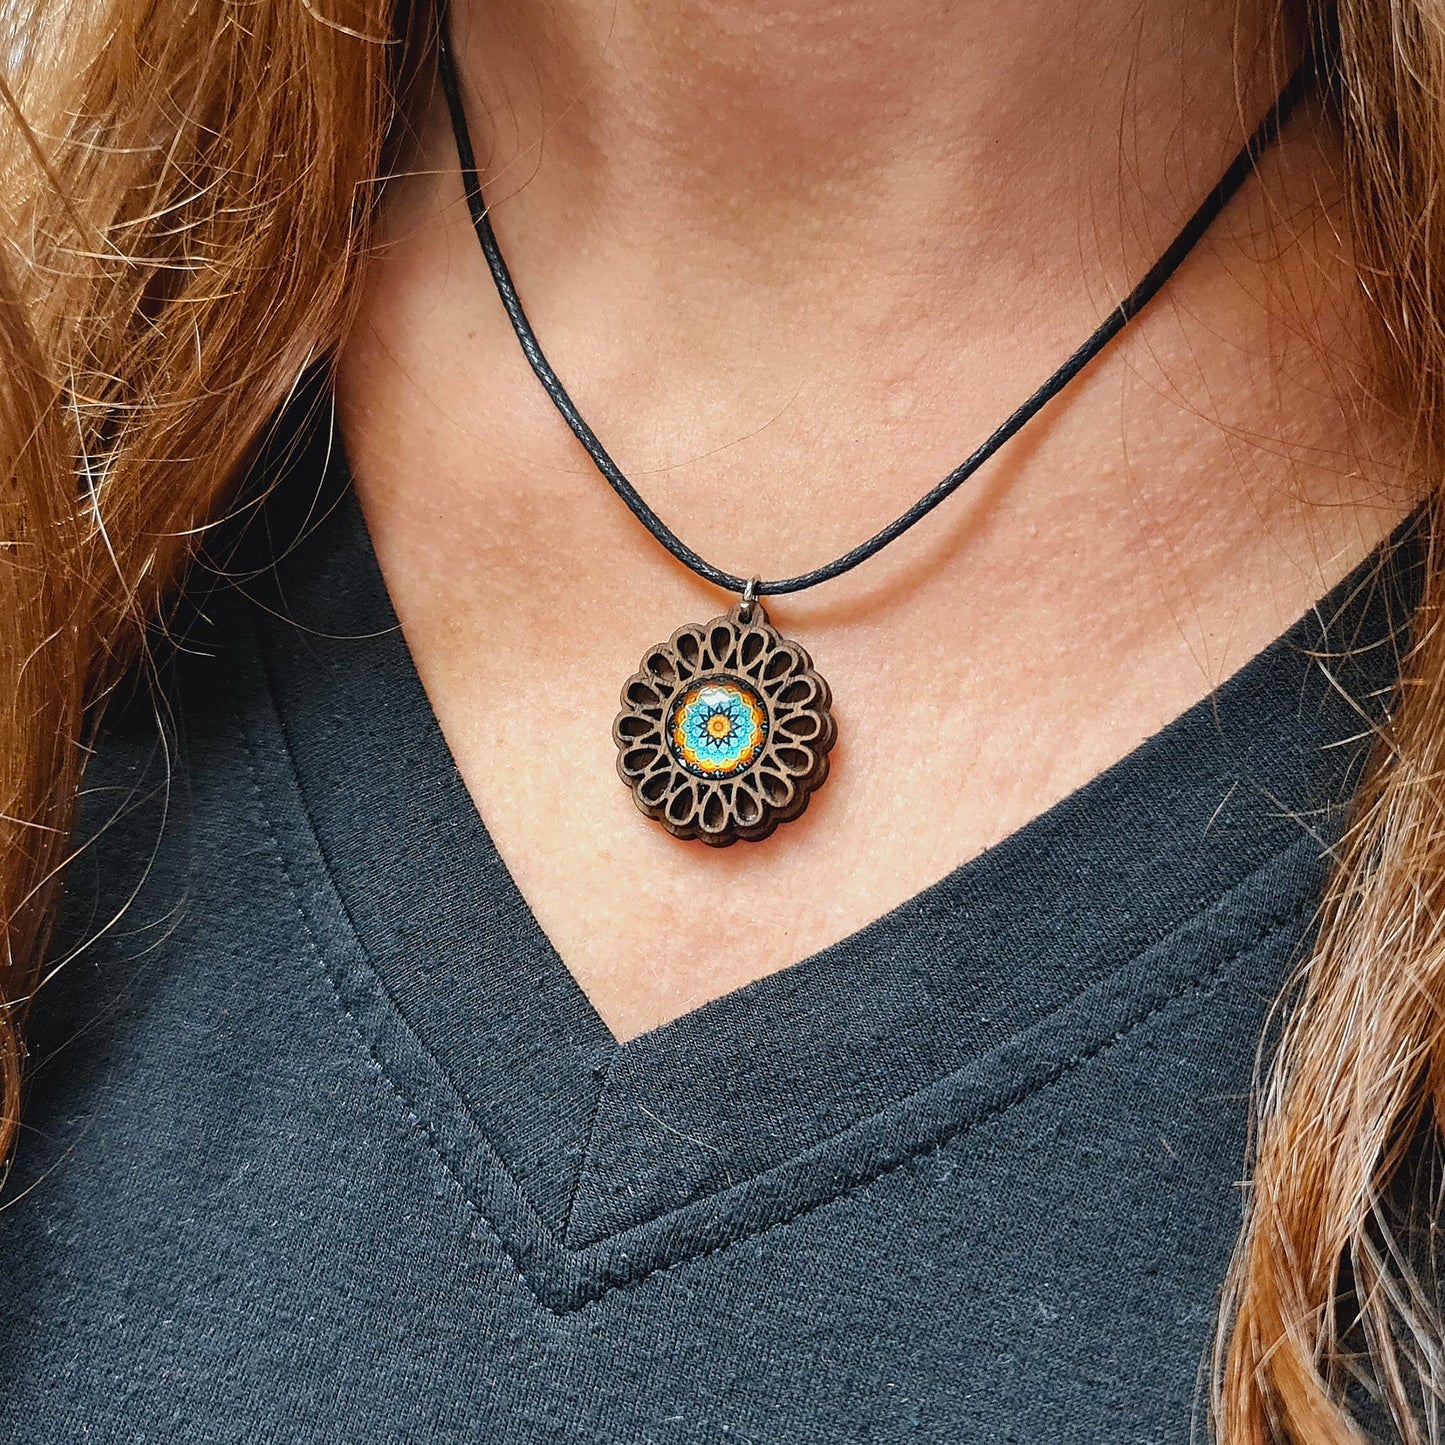 Halskette Mandala "Unendlichkeit" klein aus Holz mit Glasstein - Nanino Design Onlineshop -